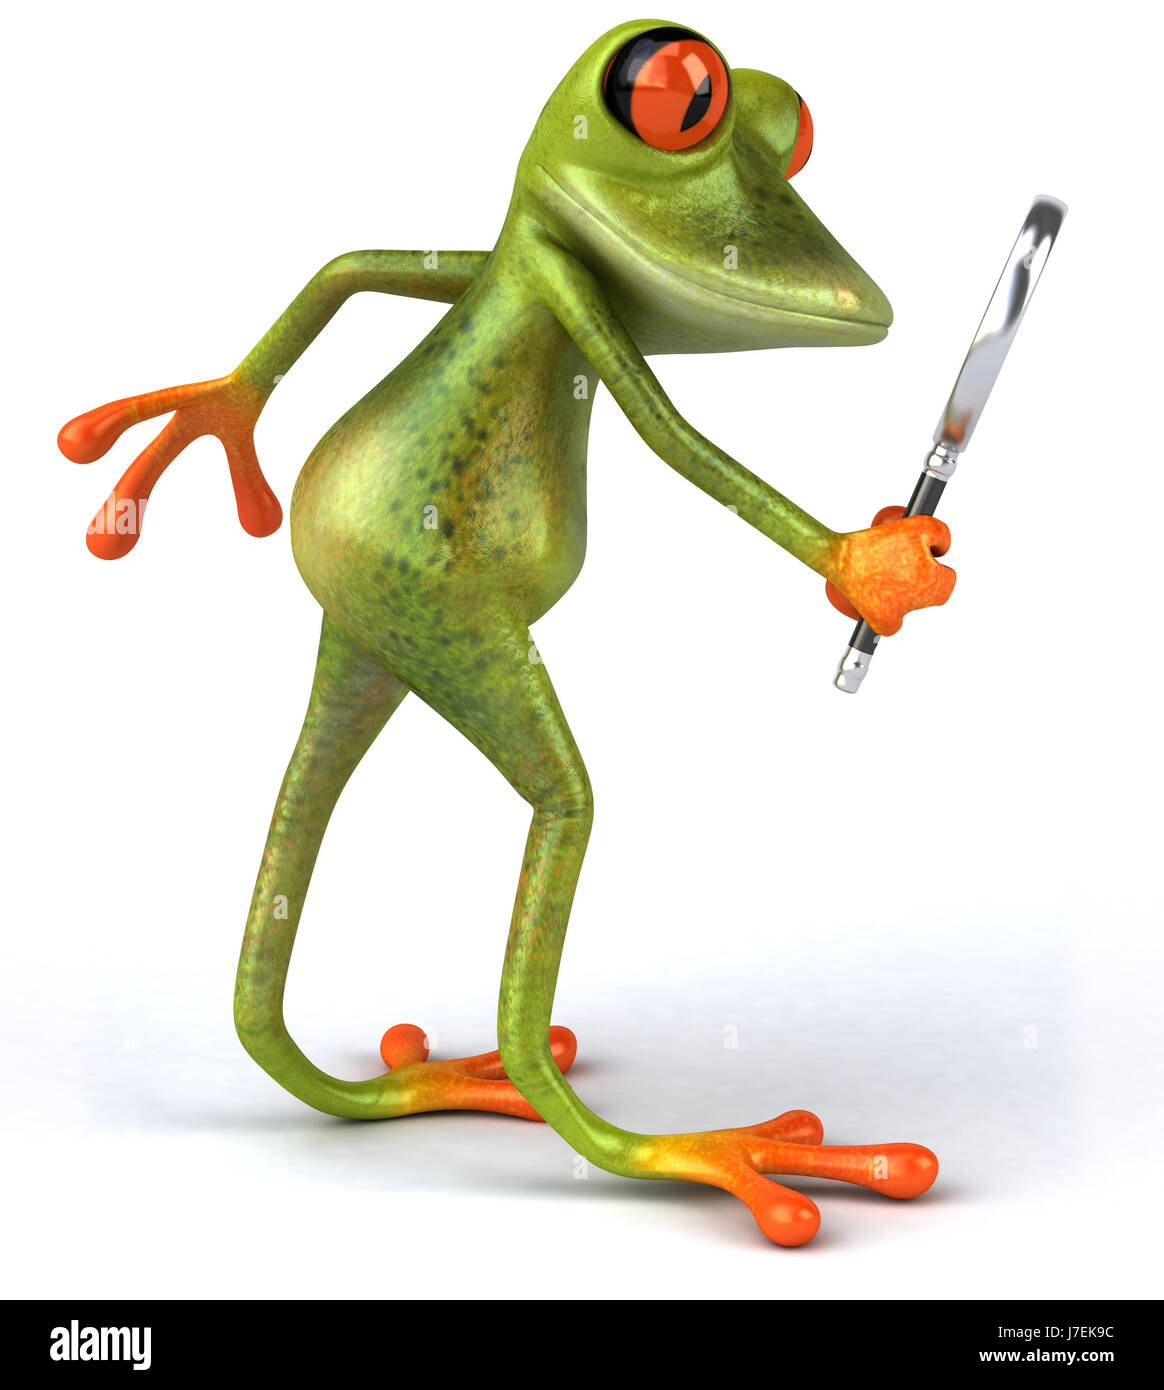 Лягушка француз. Frog 44. Иллюстрации жаба с человеческим лицом в одежде.